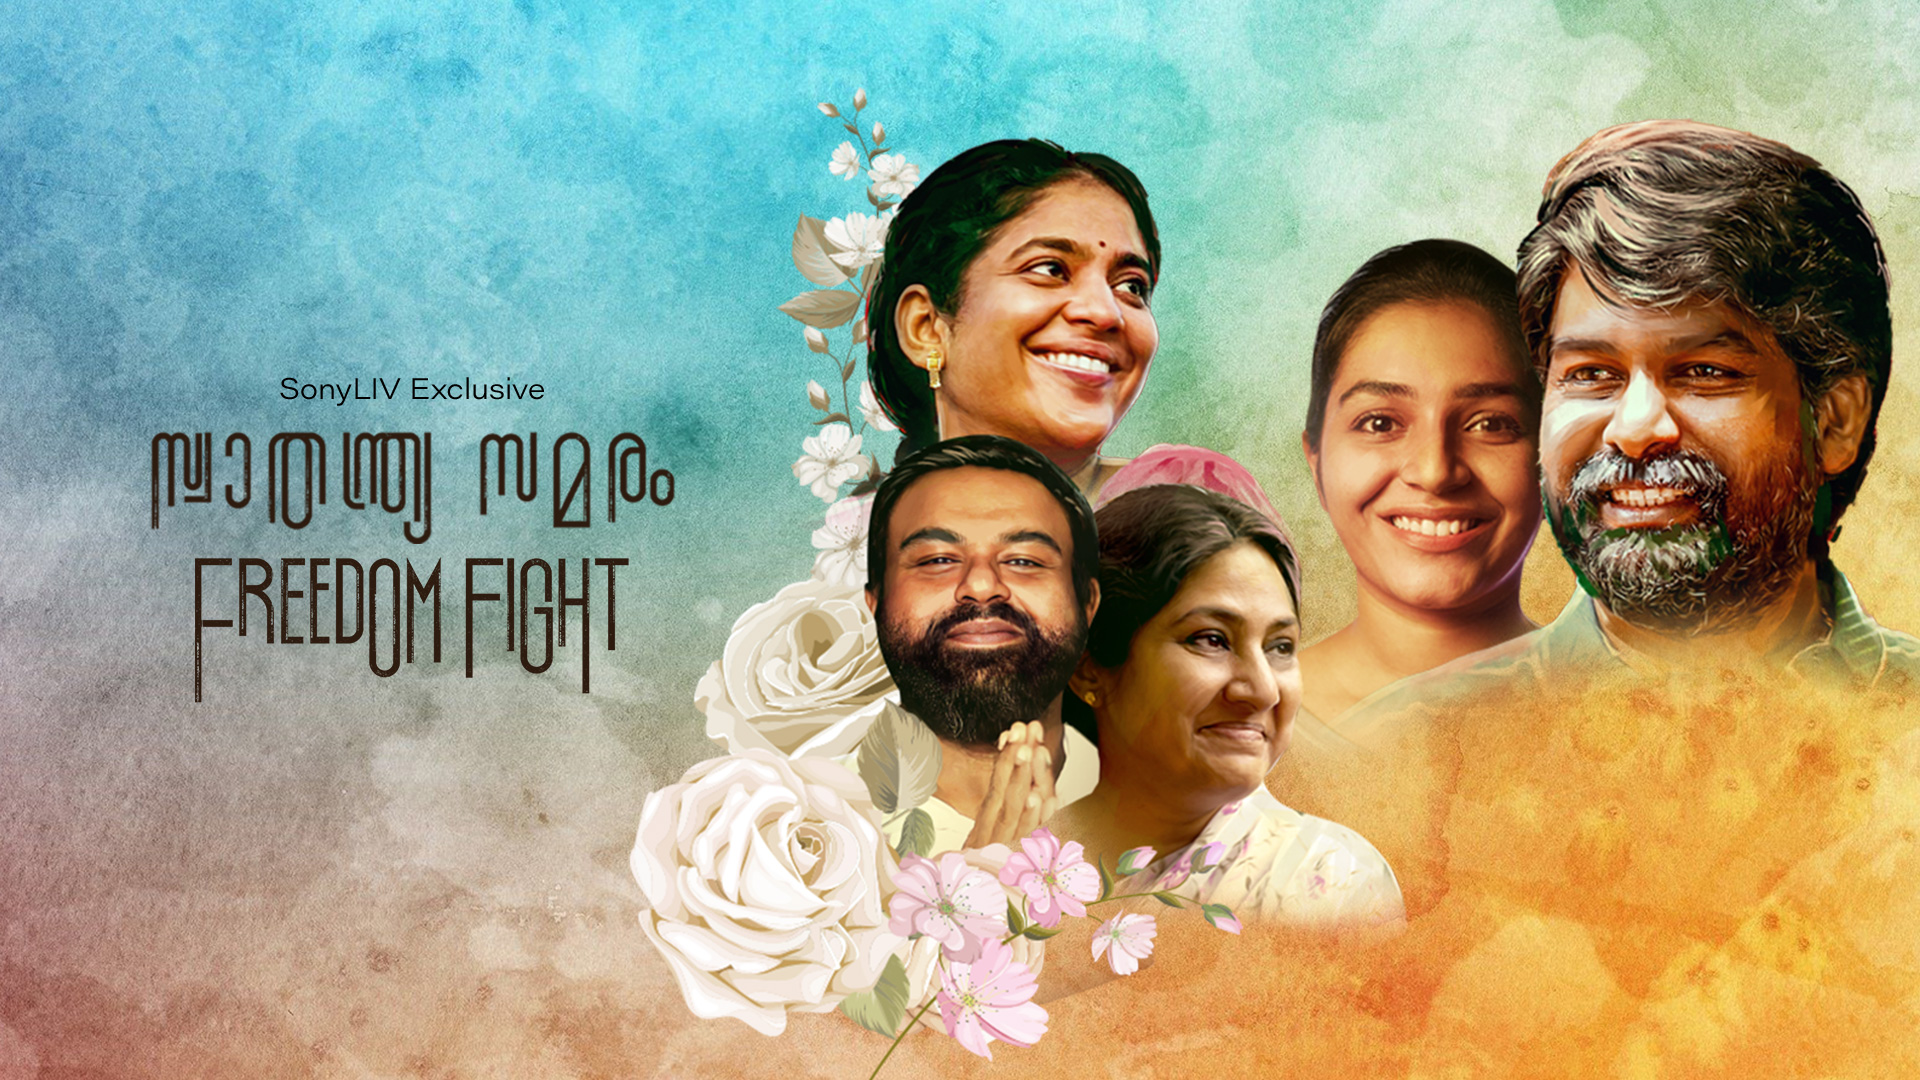 Freedom Fight(Malayalam, Anthology Of 5 Stories, SonyLIV)